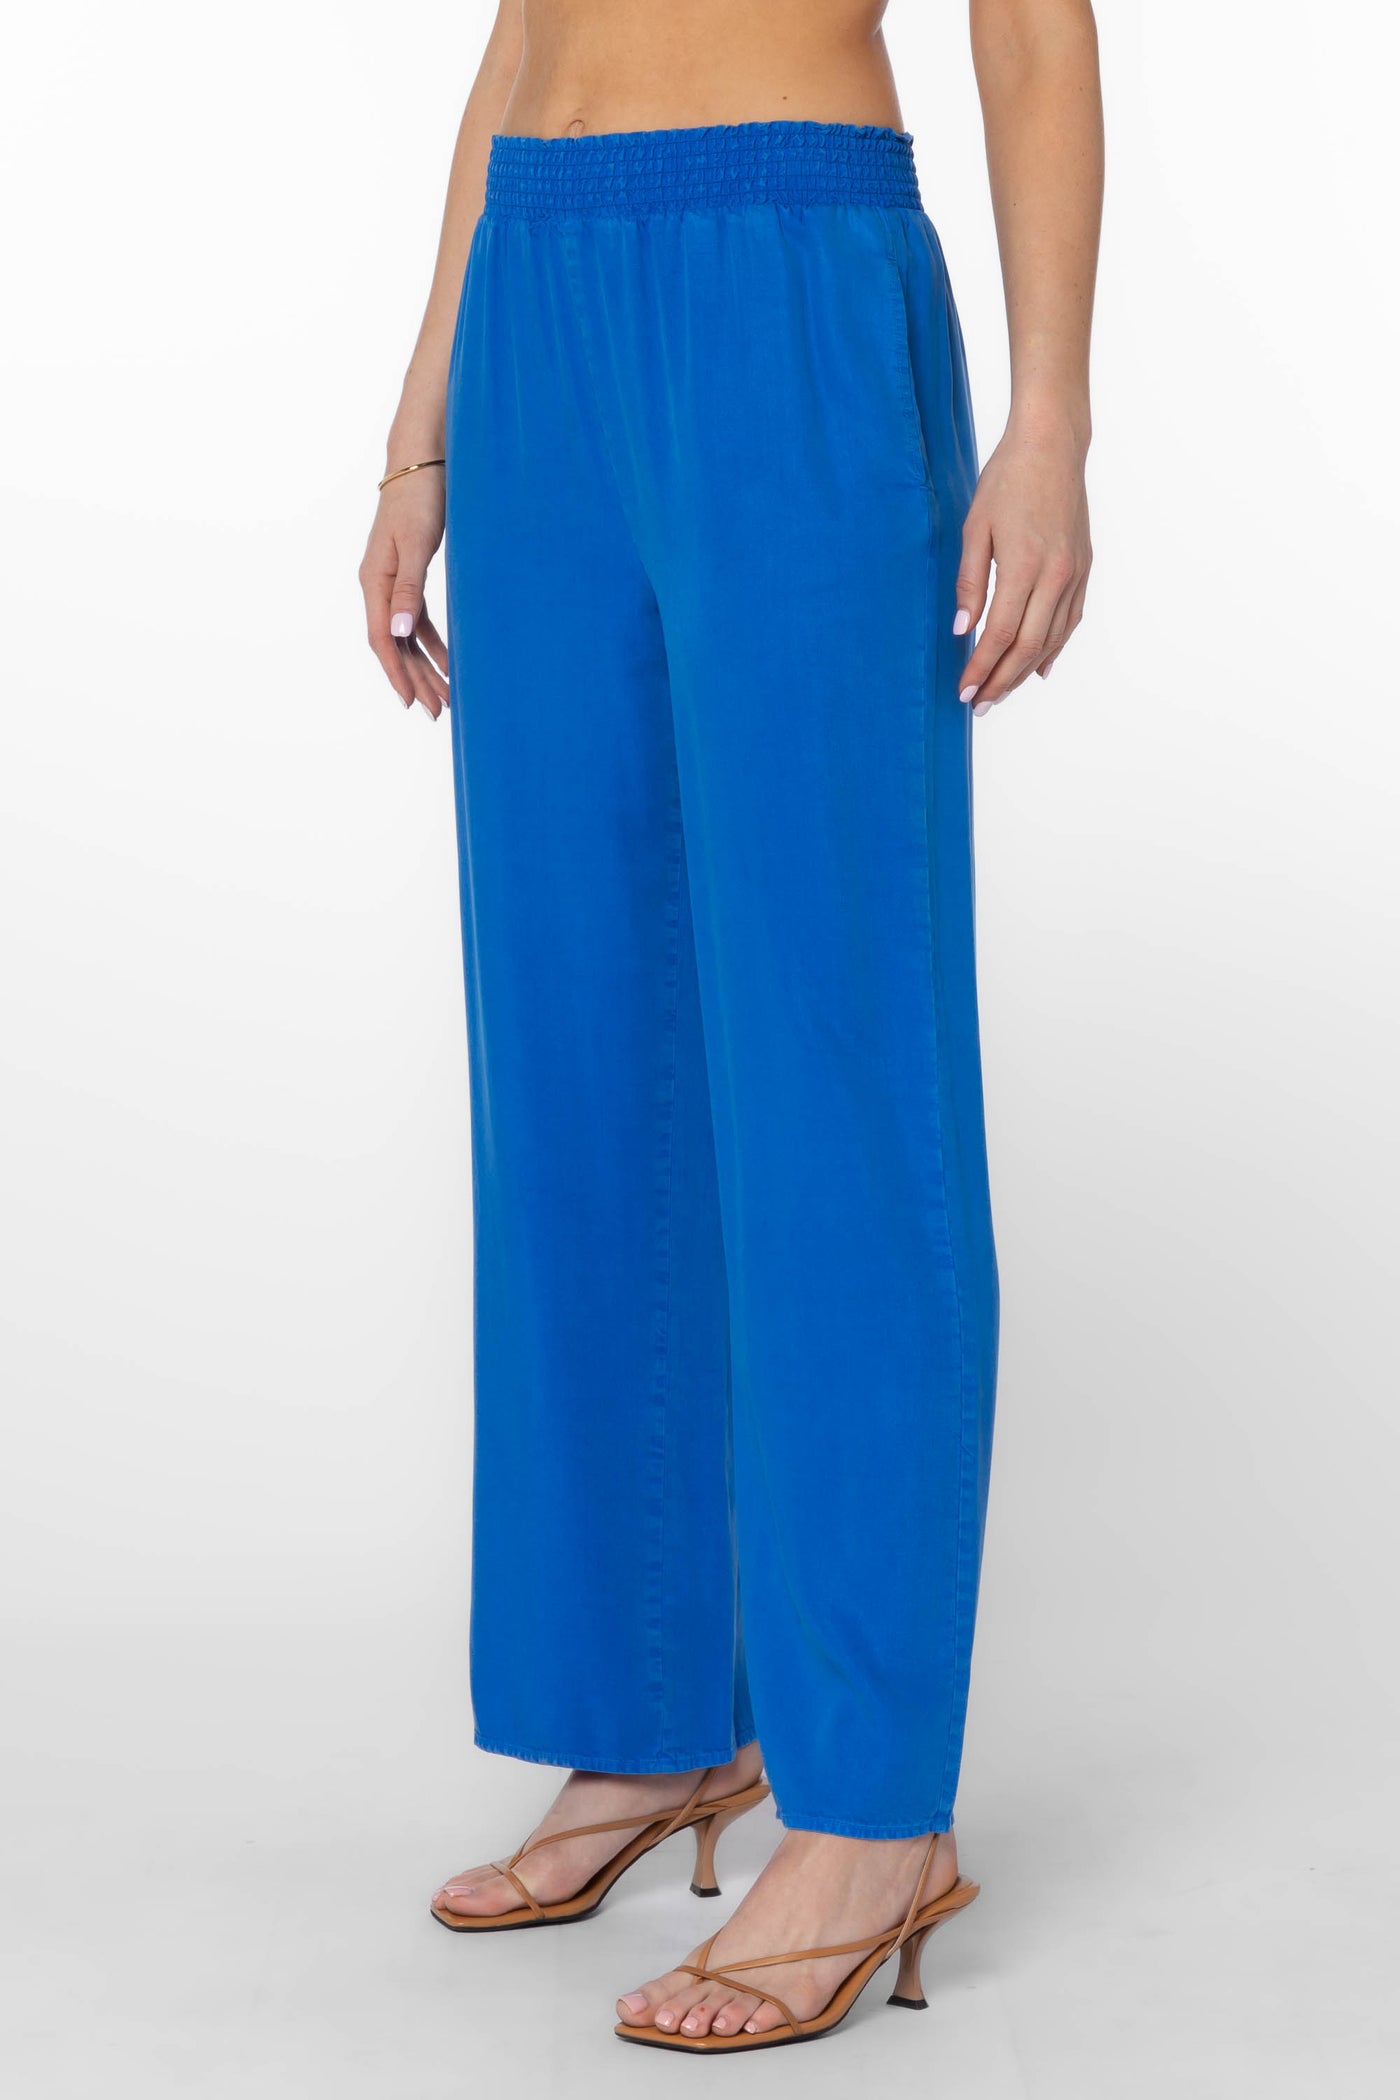 Morelia Blue Pants - Bottoms - Velvet Heart Clothing